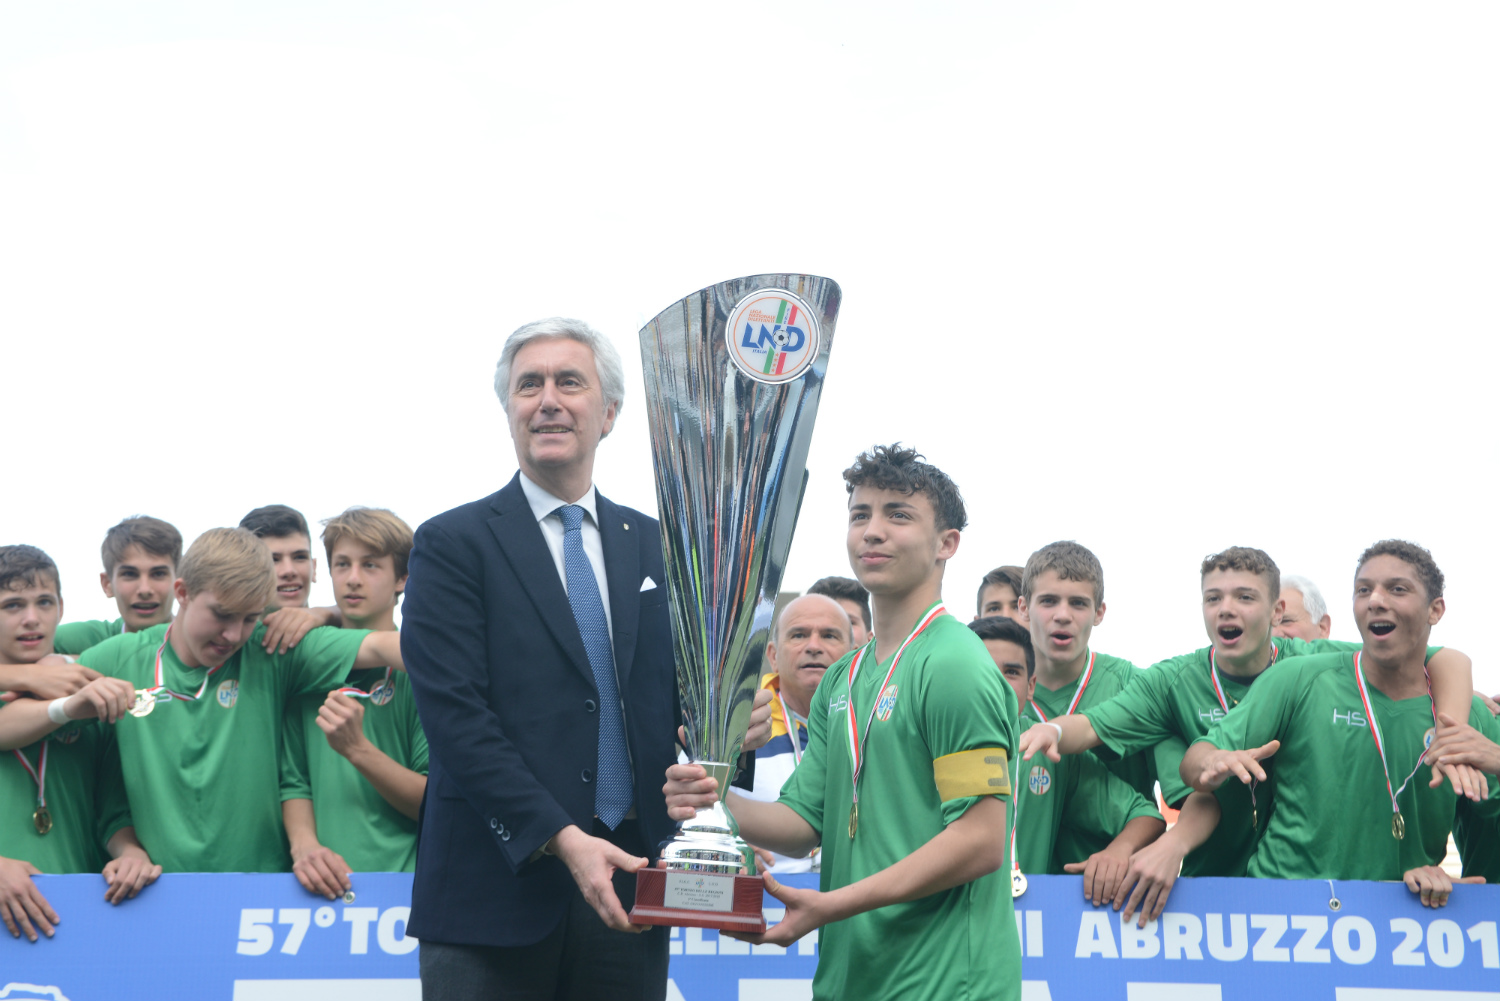 Torneo delle Regioni LND: il Lazio trionfa nei Giovanissimi, il Veneto negli Allievi